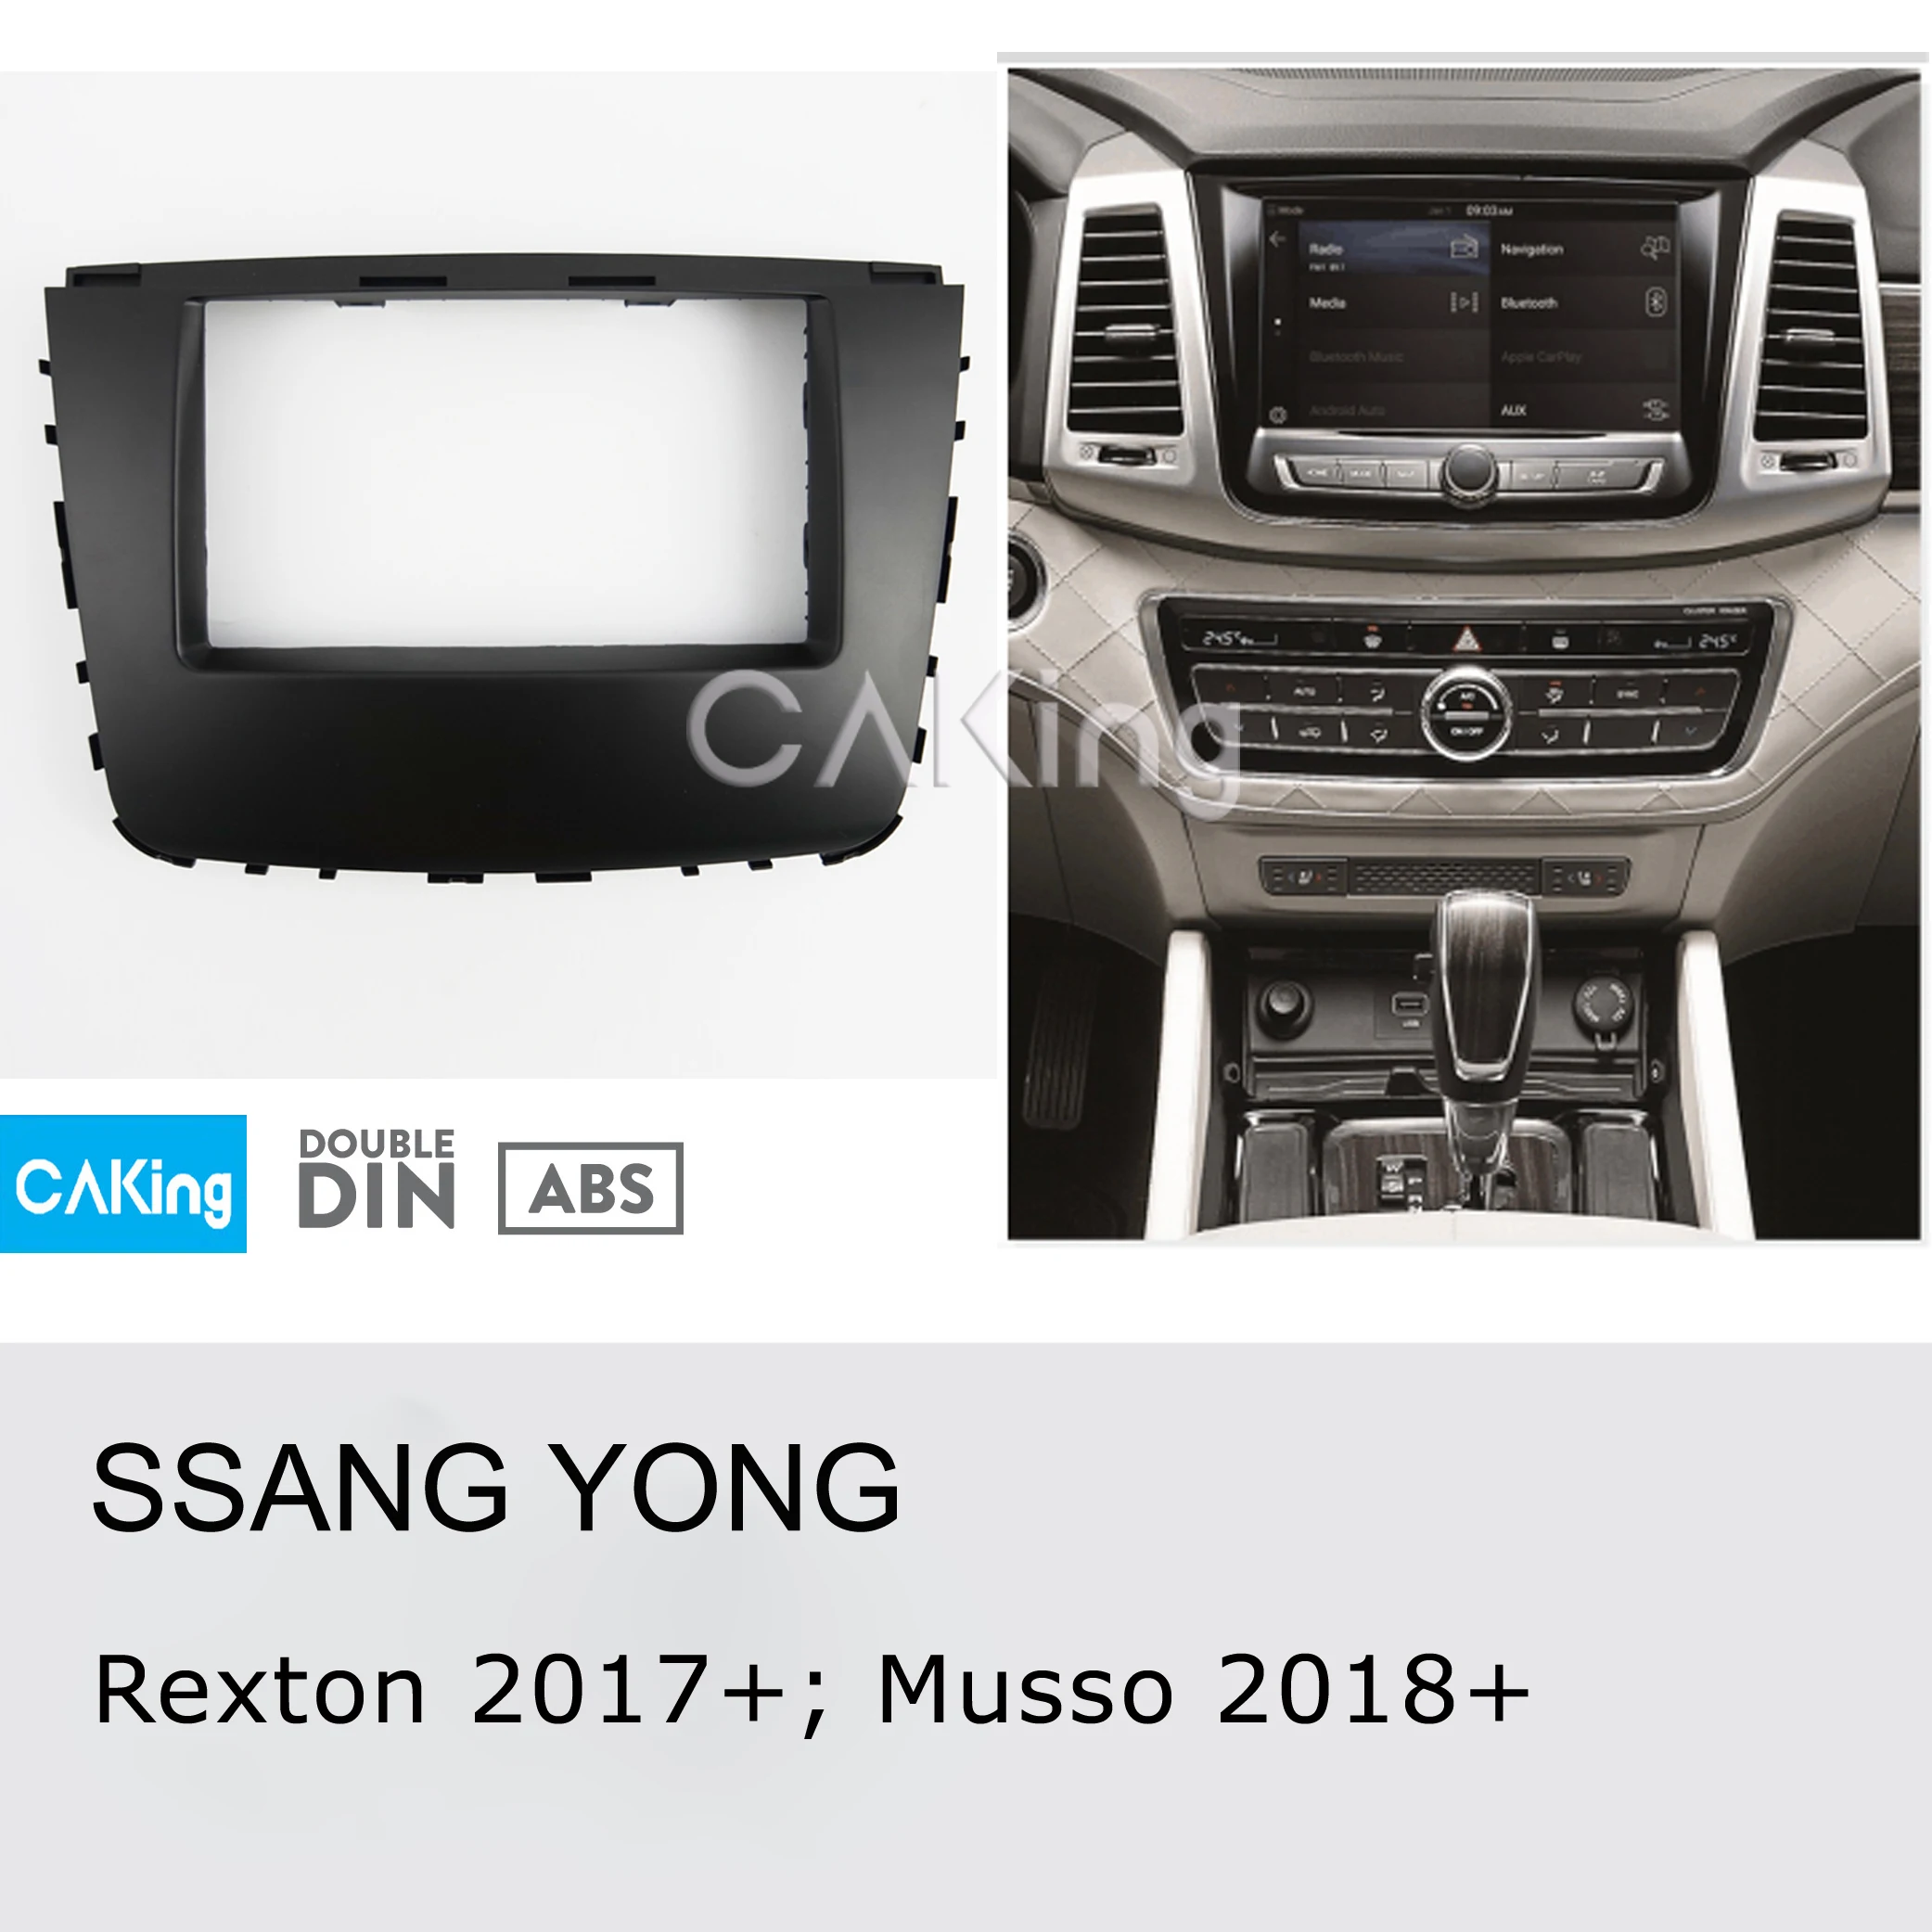 Автомобильная Радио панель для SSANGYONG Rexton+; Musso+ Dash комплект установка приборная пластина консоль адаптер ободок крышки уравновешивания